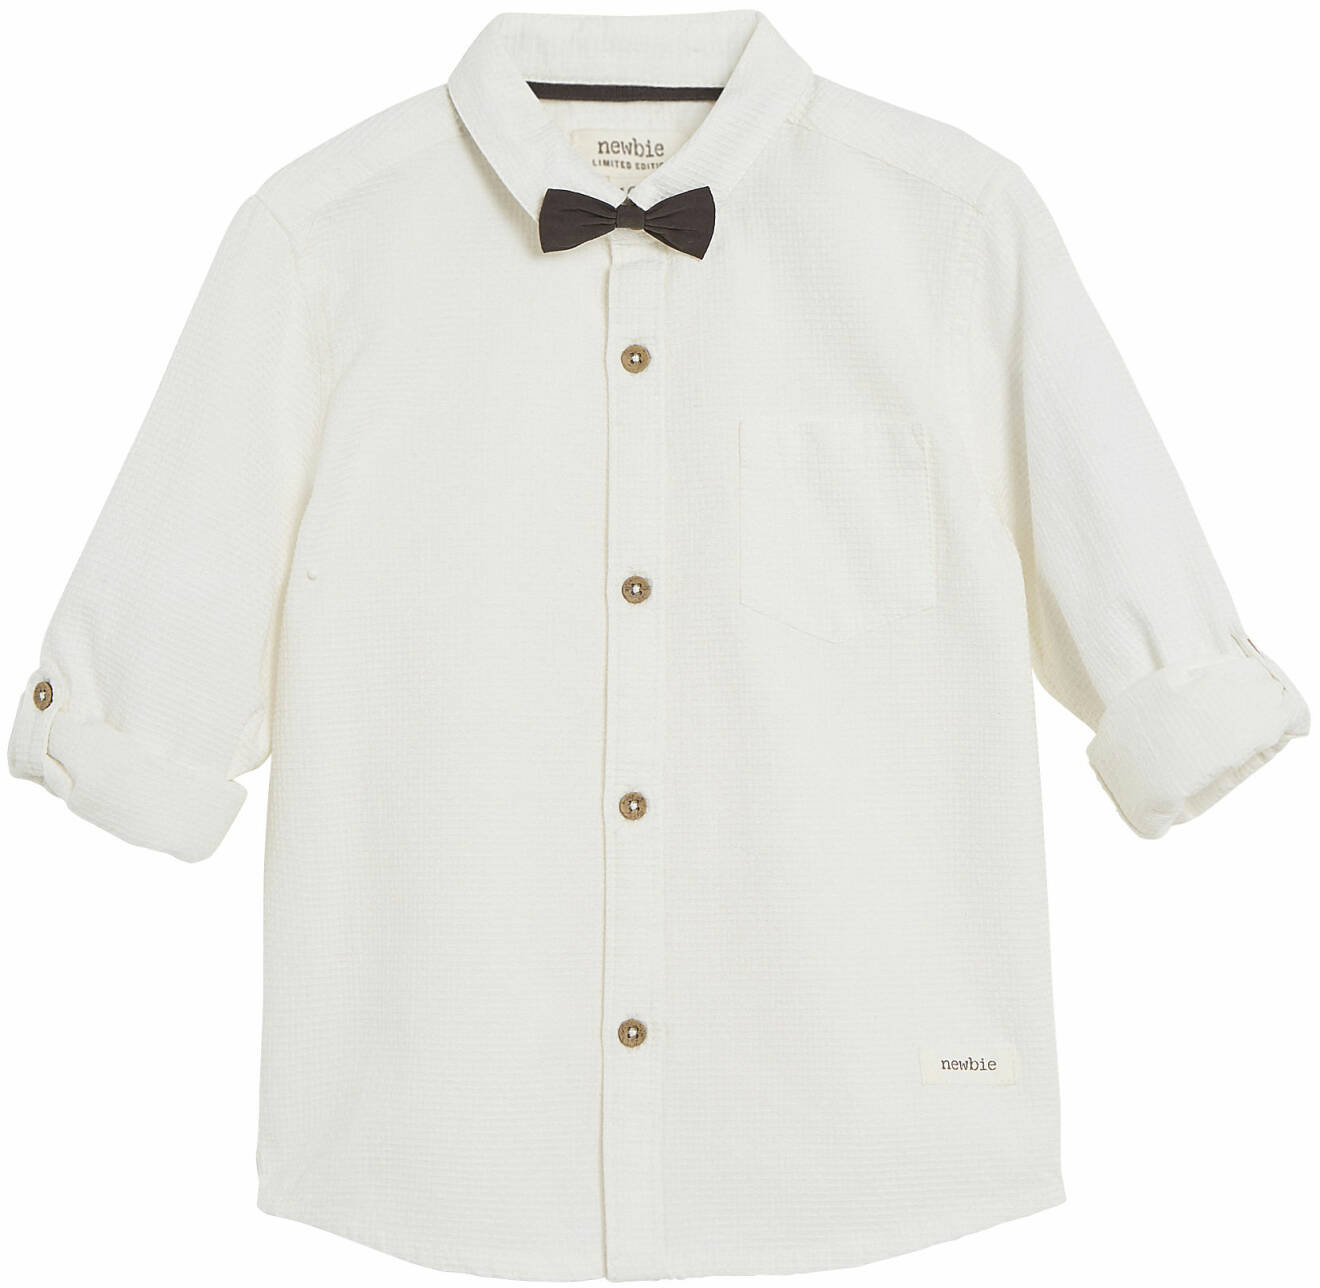 vit skjorta med fluga barn